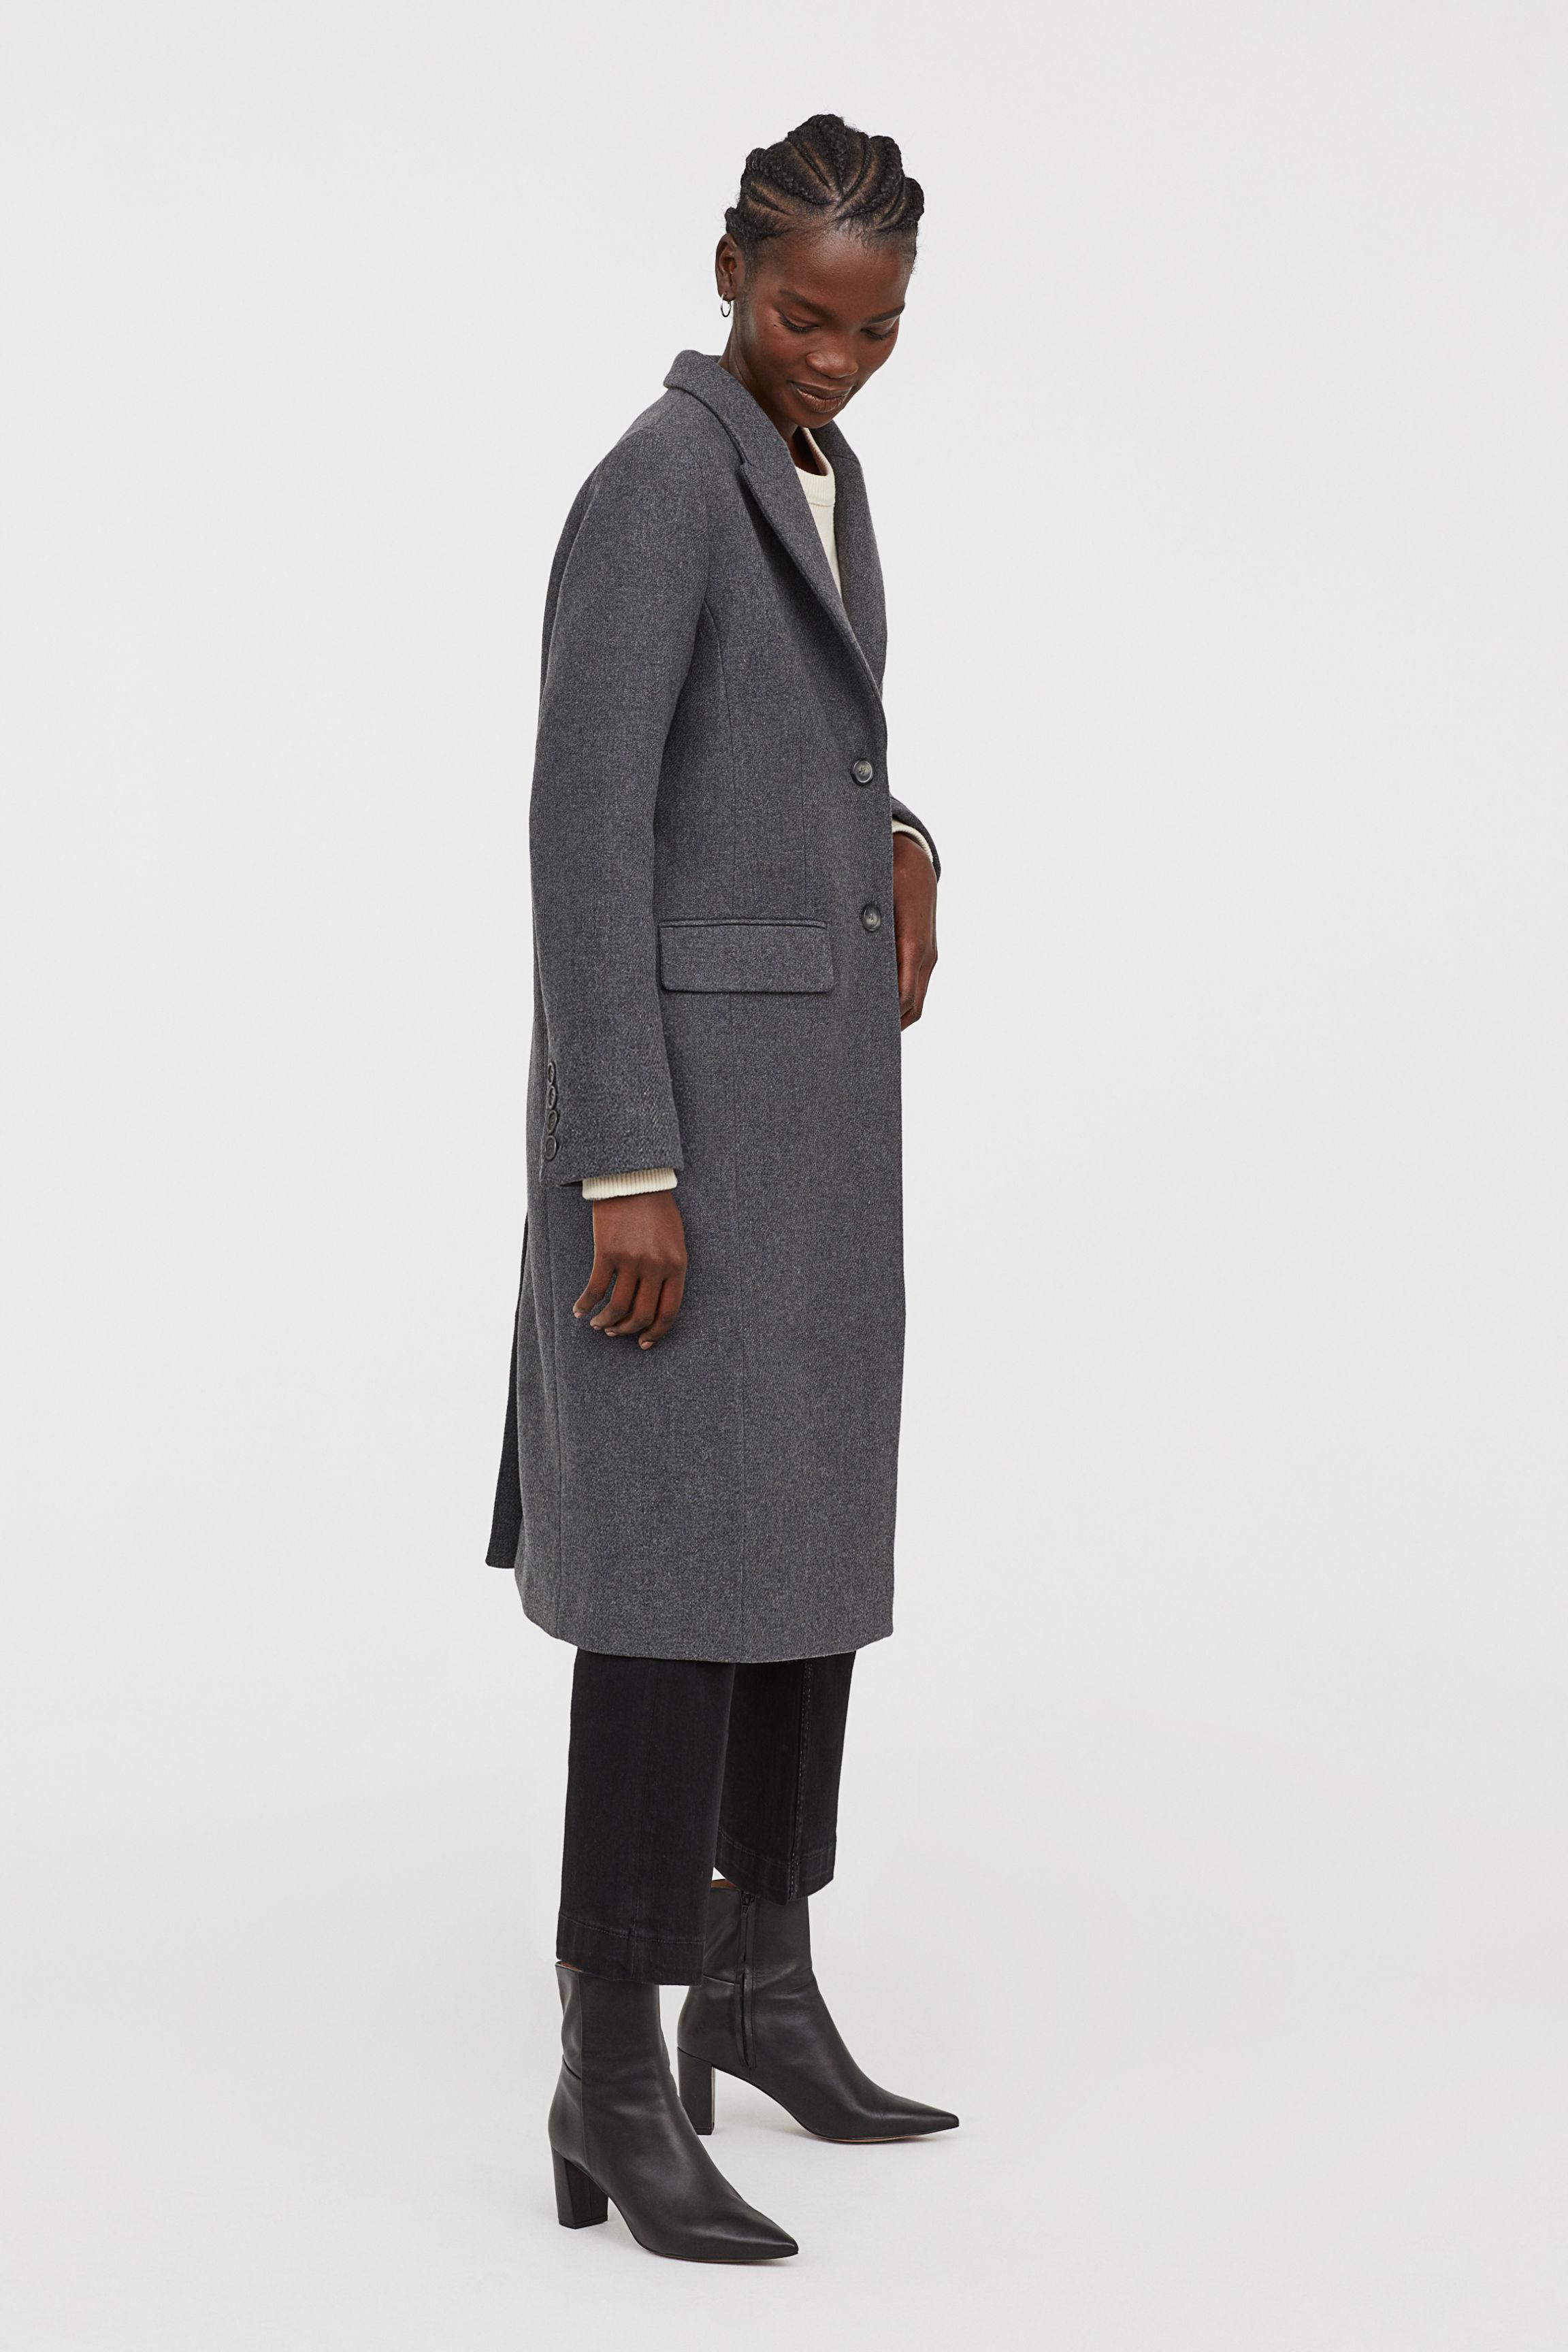 H&M Wool-blend Coat in Grey Marl (Grey) - Lyst